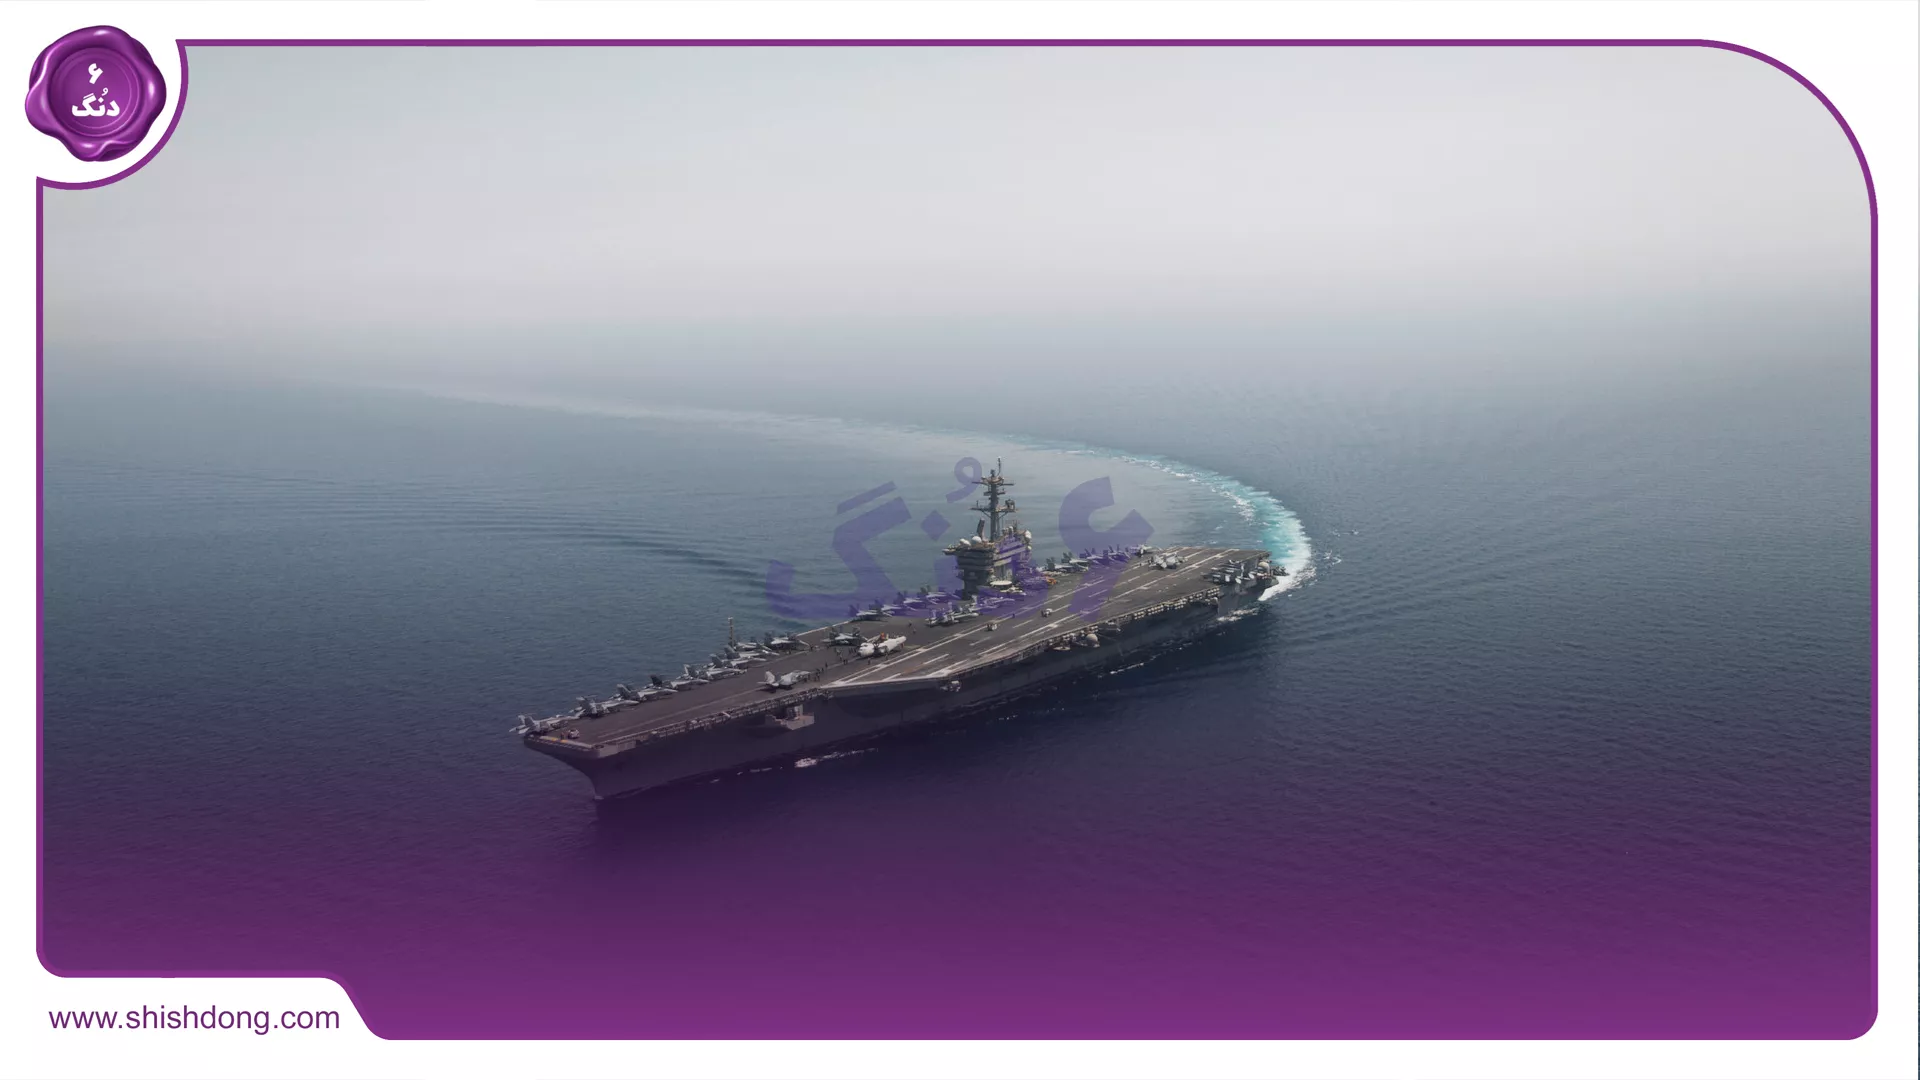 نیرو نظامی امریکایی در خلیج فارس